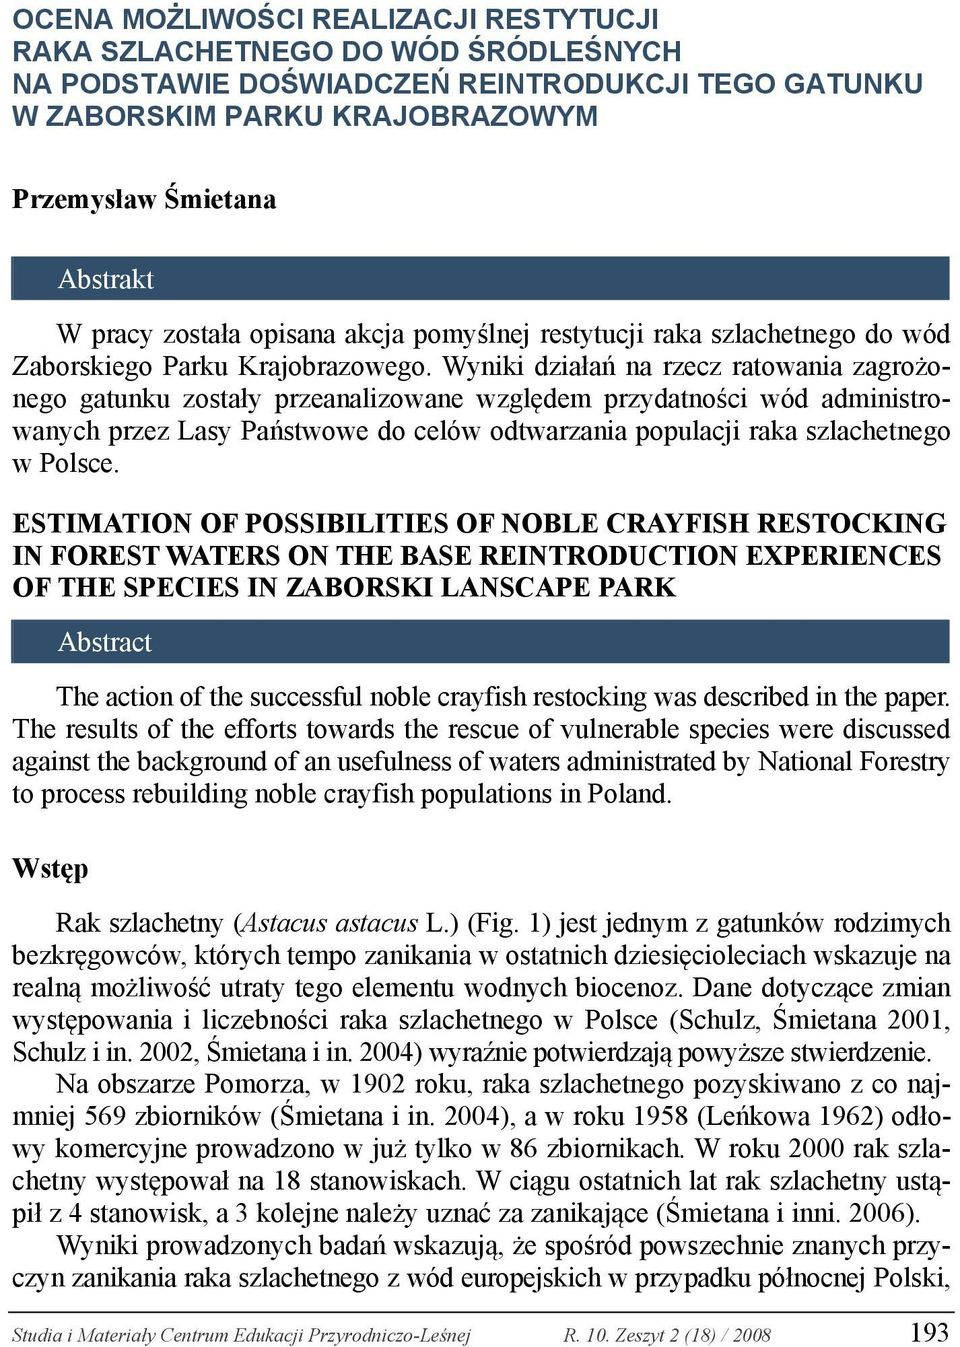 Wyniki działań na rzecz ratowania zagrożonego gatunku zostały przeanalizowane względem przydatności wód administrowanych przez Lasy Państwowe do celów odtwarzania populacji raka szlachetnego w Polsce.